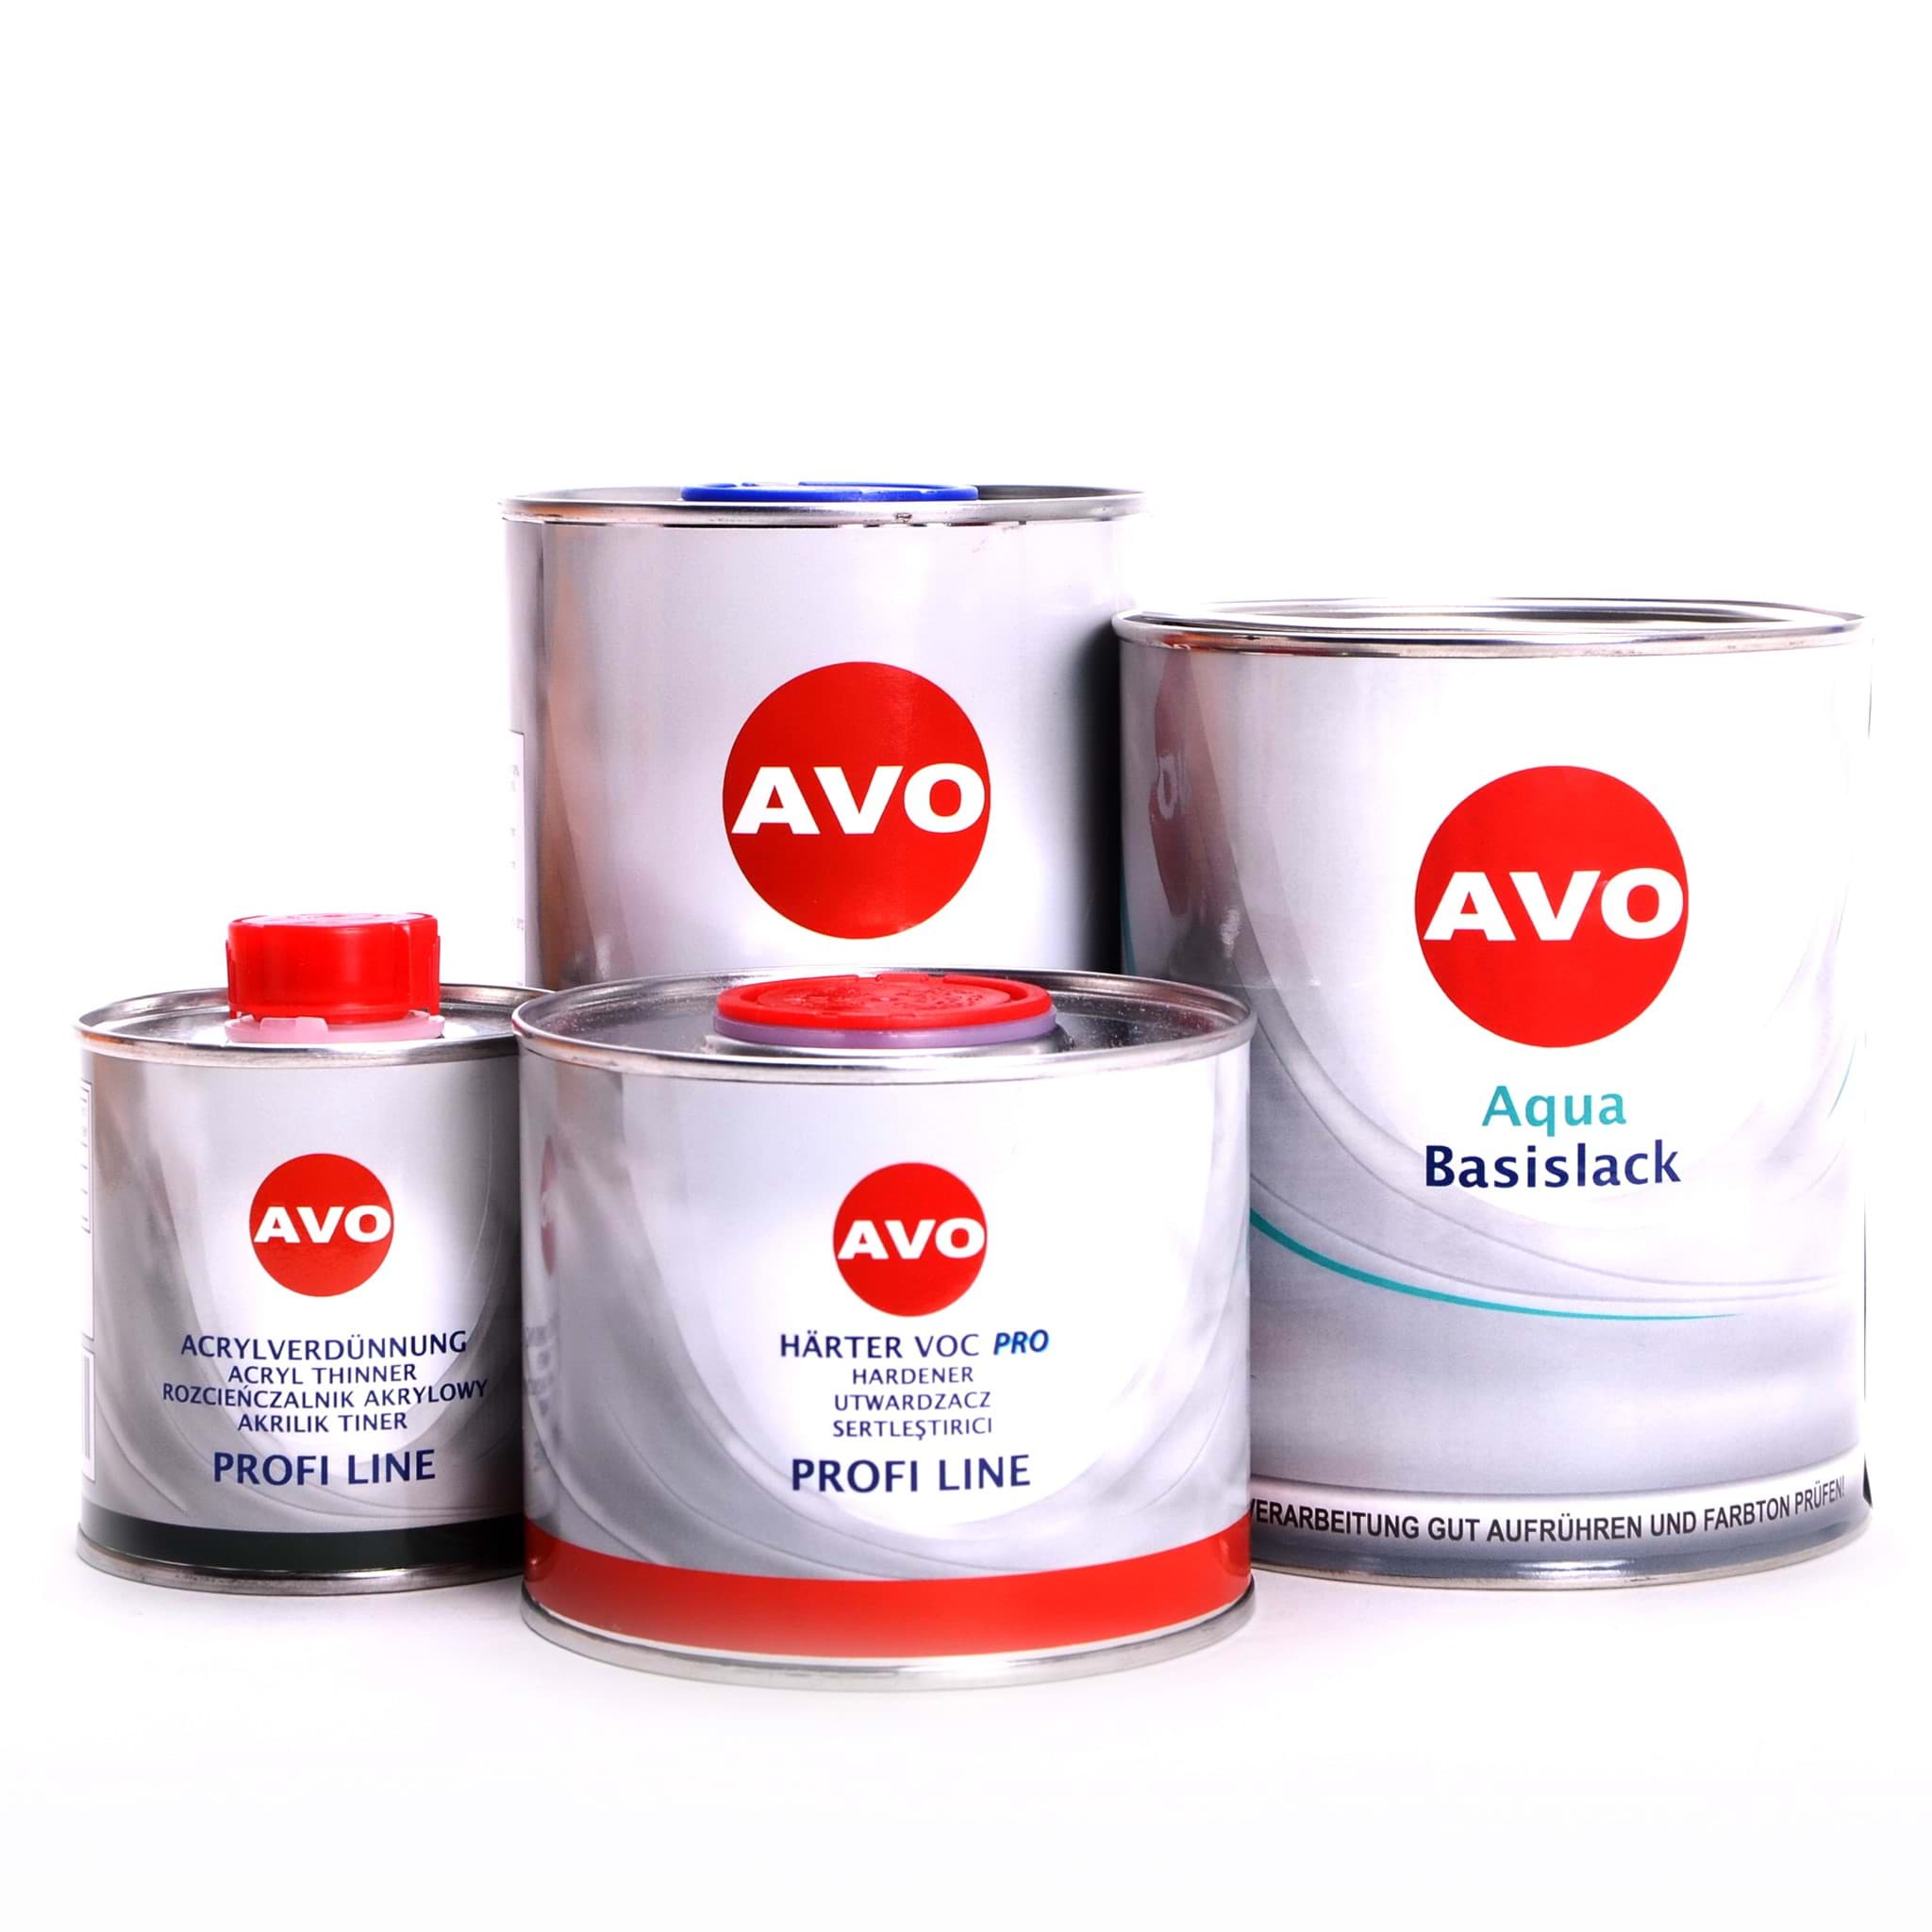 Afbeelding van AVO Autolack 2,75 Liter komplett Set in Ihrem Wunschfarbton